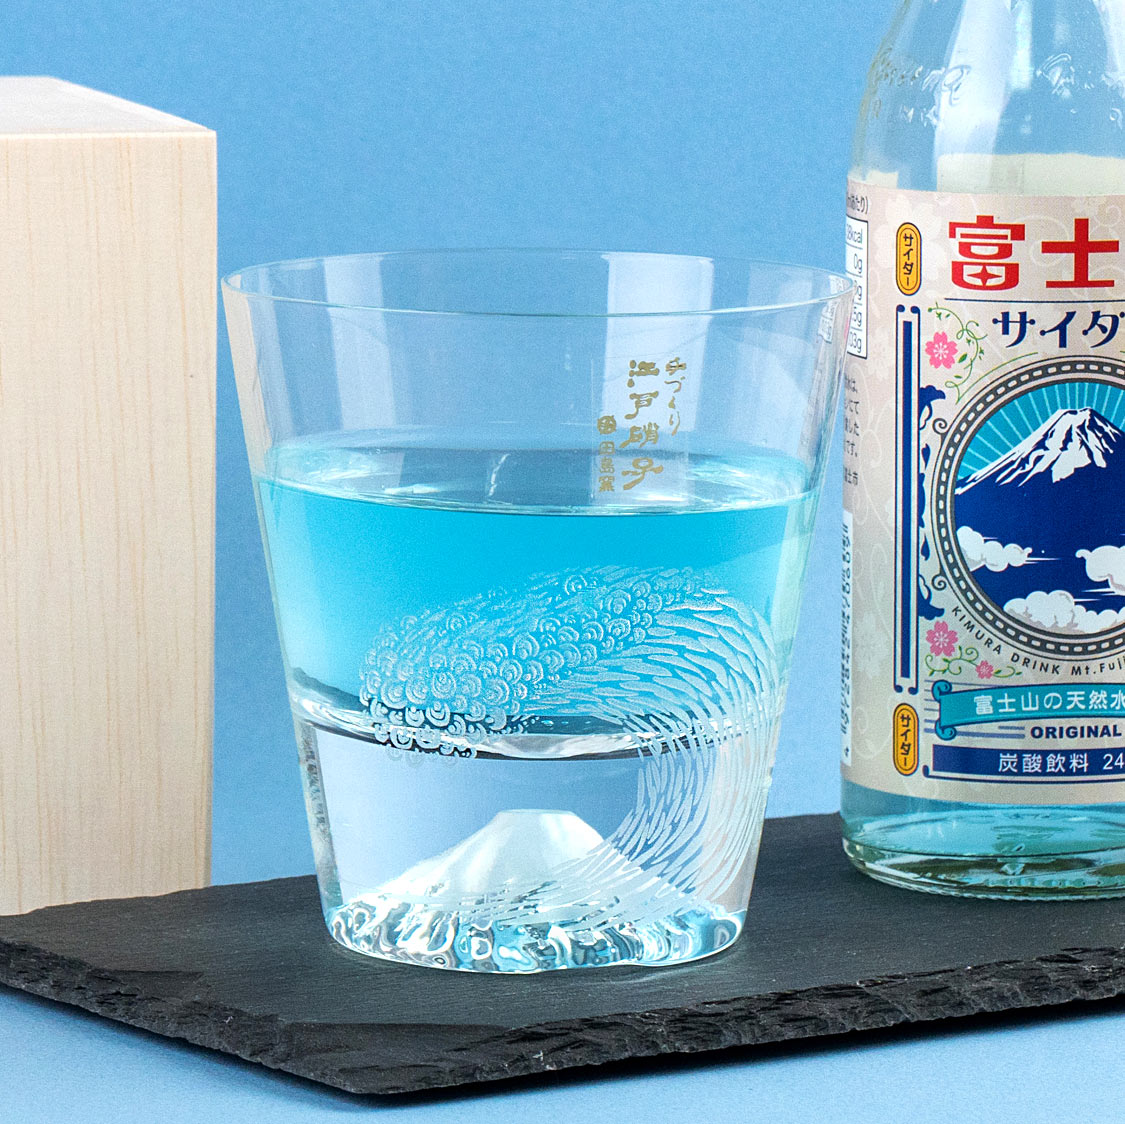 倒入飲料會隨著光折射，將顏色映在杯底的富士山杯。